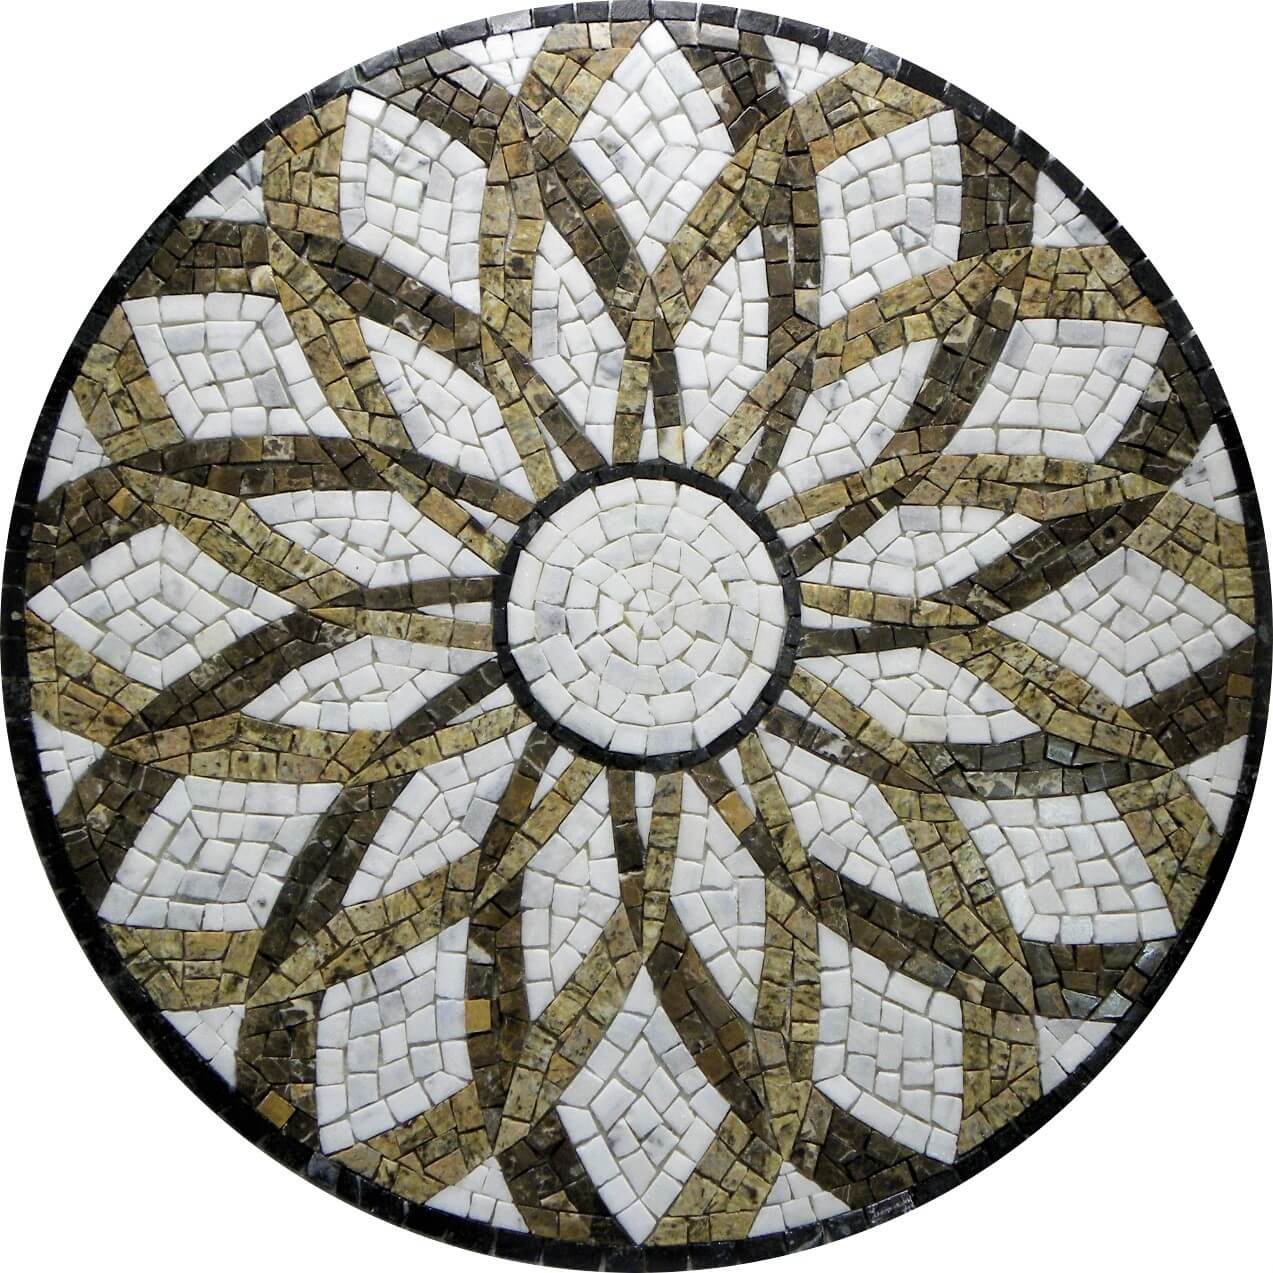 Piso em Mosaico Romano Vortice 80cm - 1